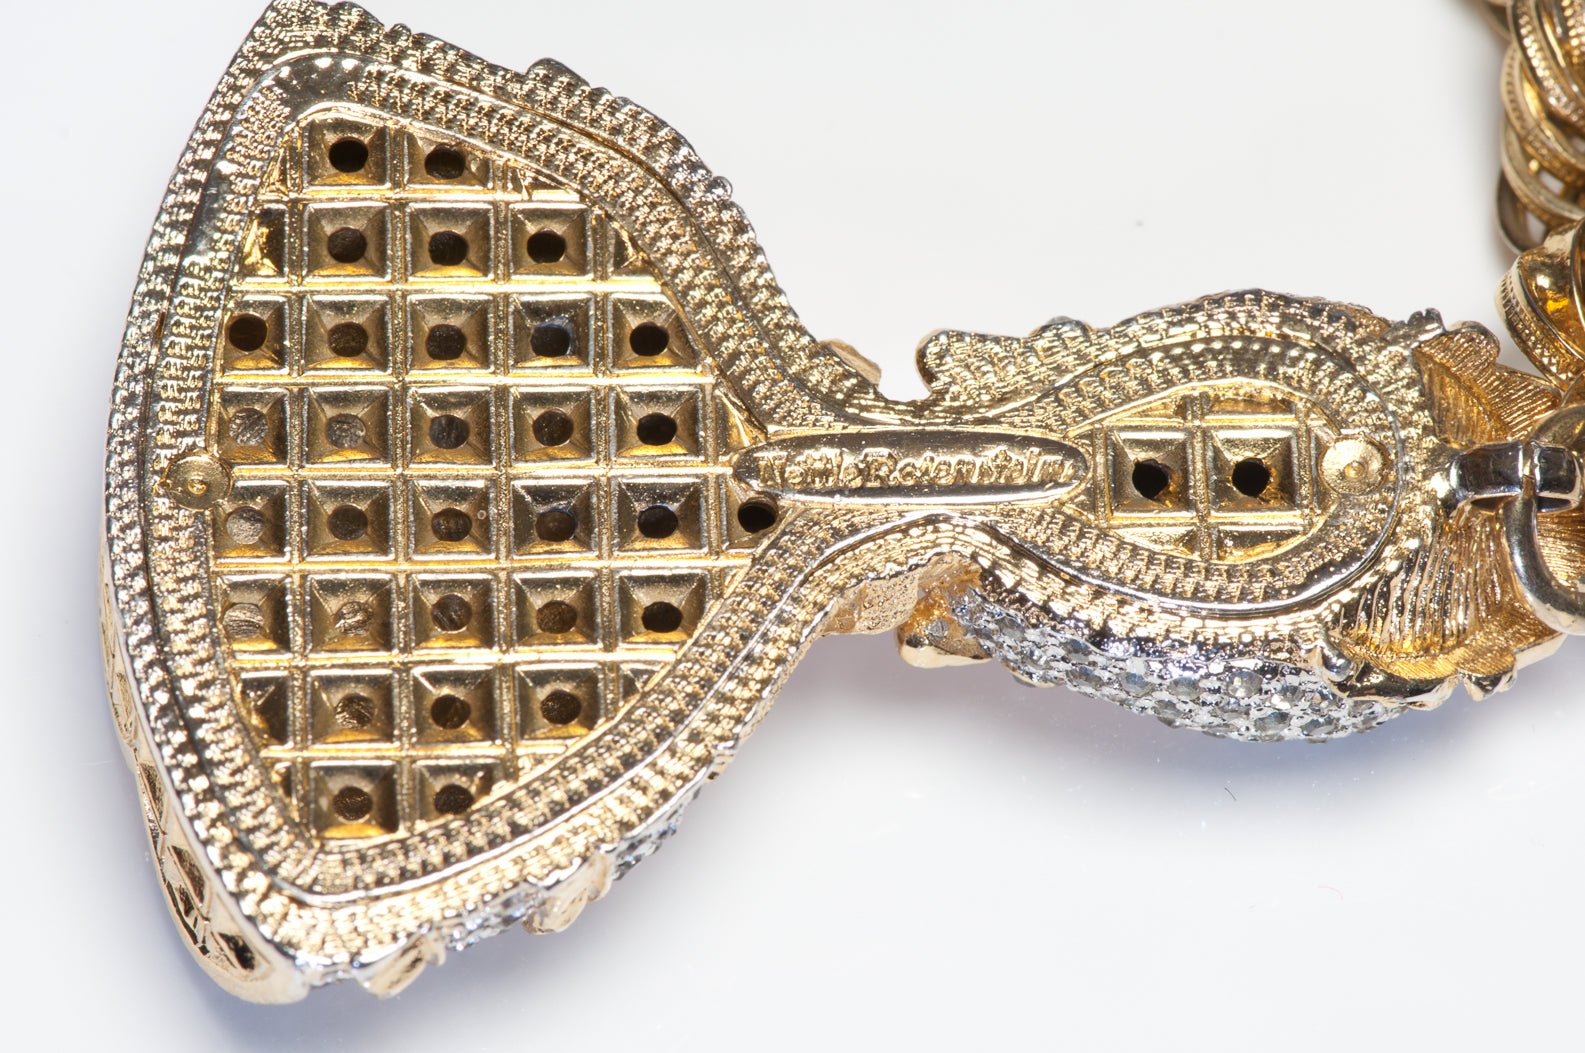 Vintage Nettie Rosenstein Crystal Queen Elizabeth Pendant Chain Necklace